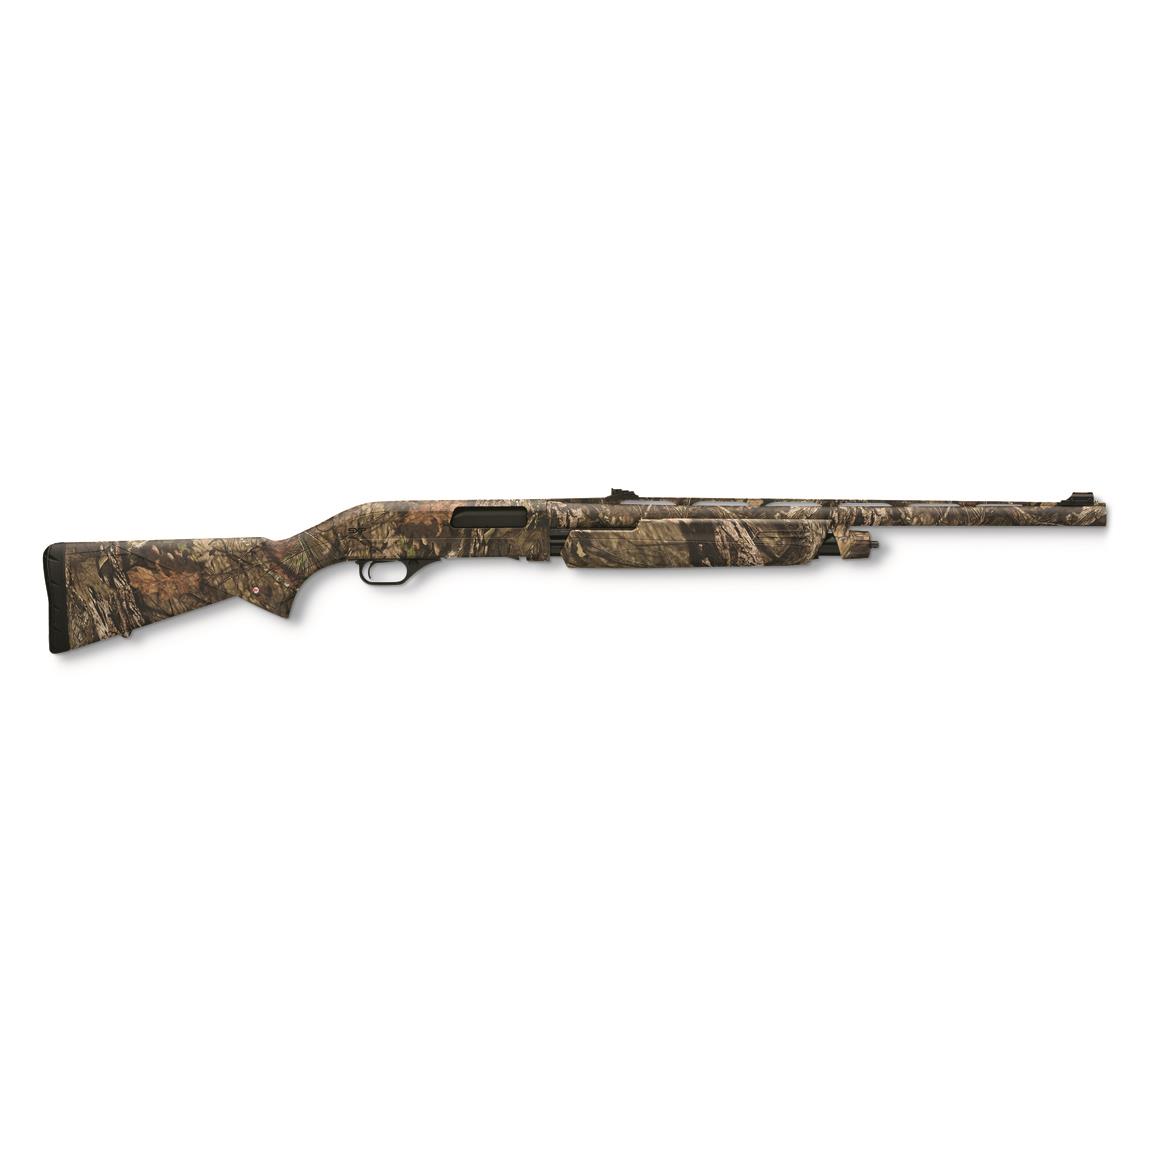 Winchester SXP NWTF Turkey Hunter, Pump, 12 Gauge, 24" BBL, 4+1 Rds., MOBUC